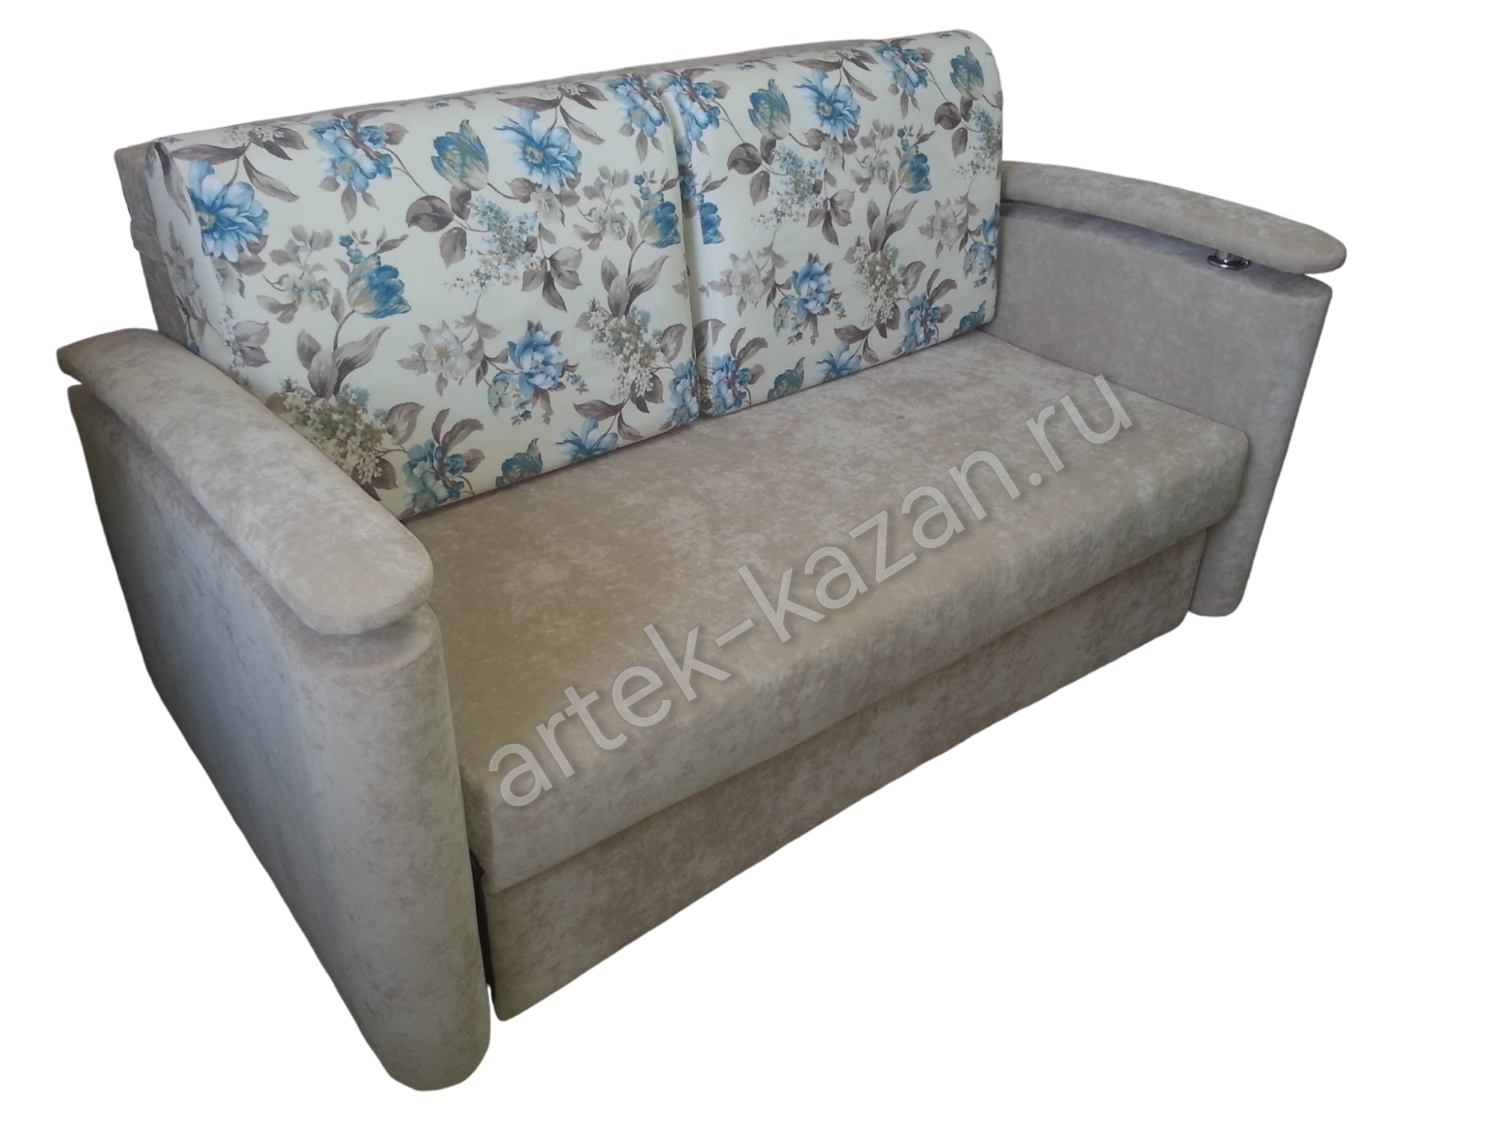 Мини диван на выкатном механизме Миник фото № 6. Купить недорогой диван по низкой цене от производителя можно у нас.